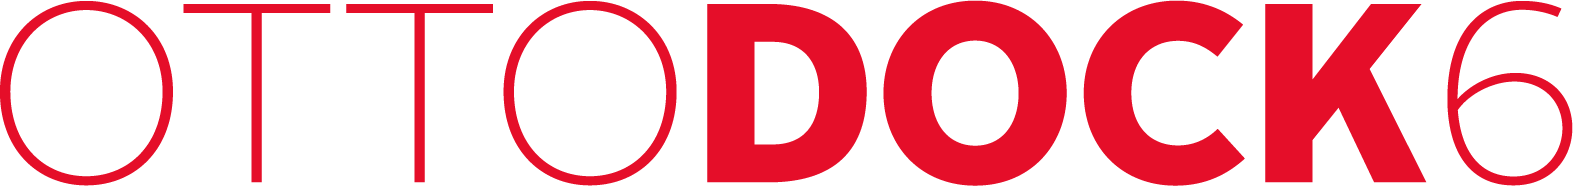 OTTO DOCK 6 Logo